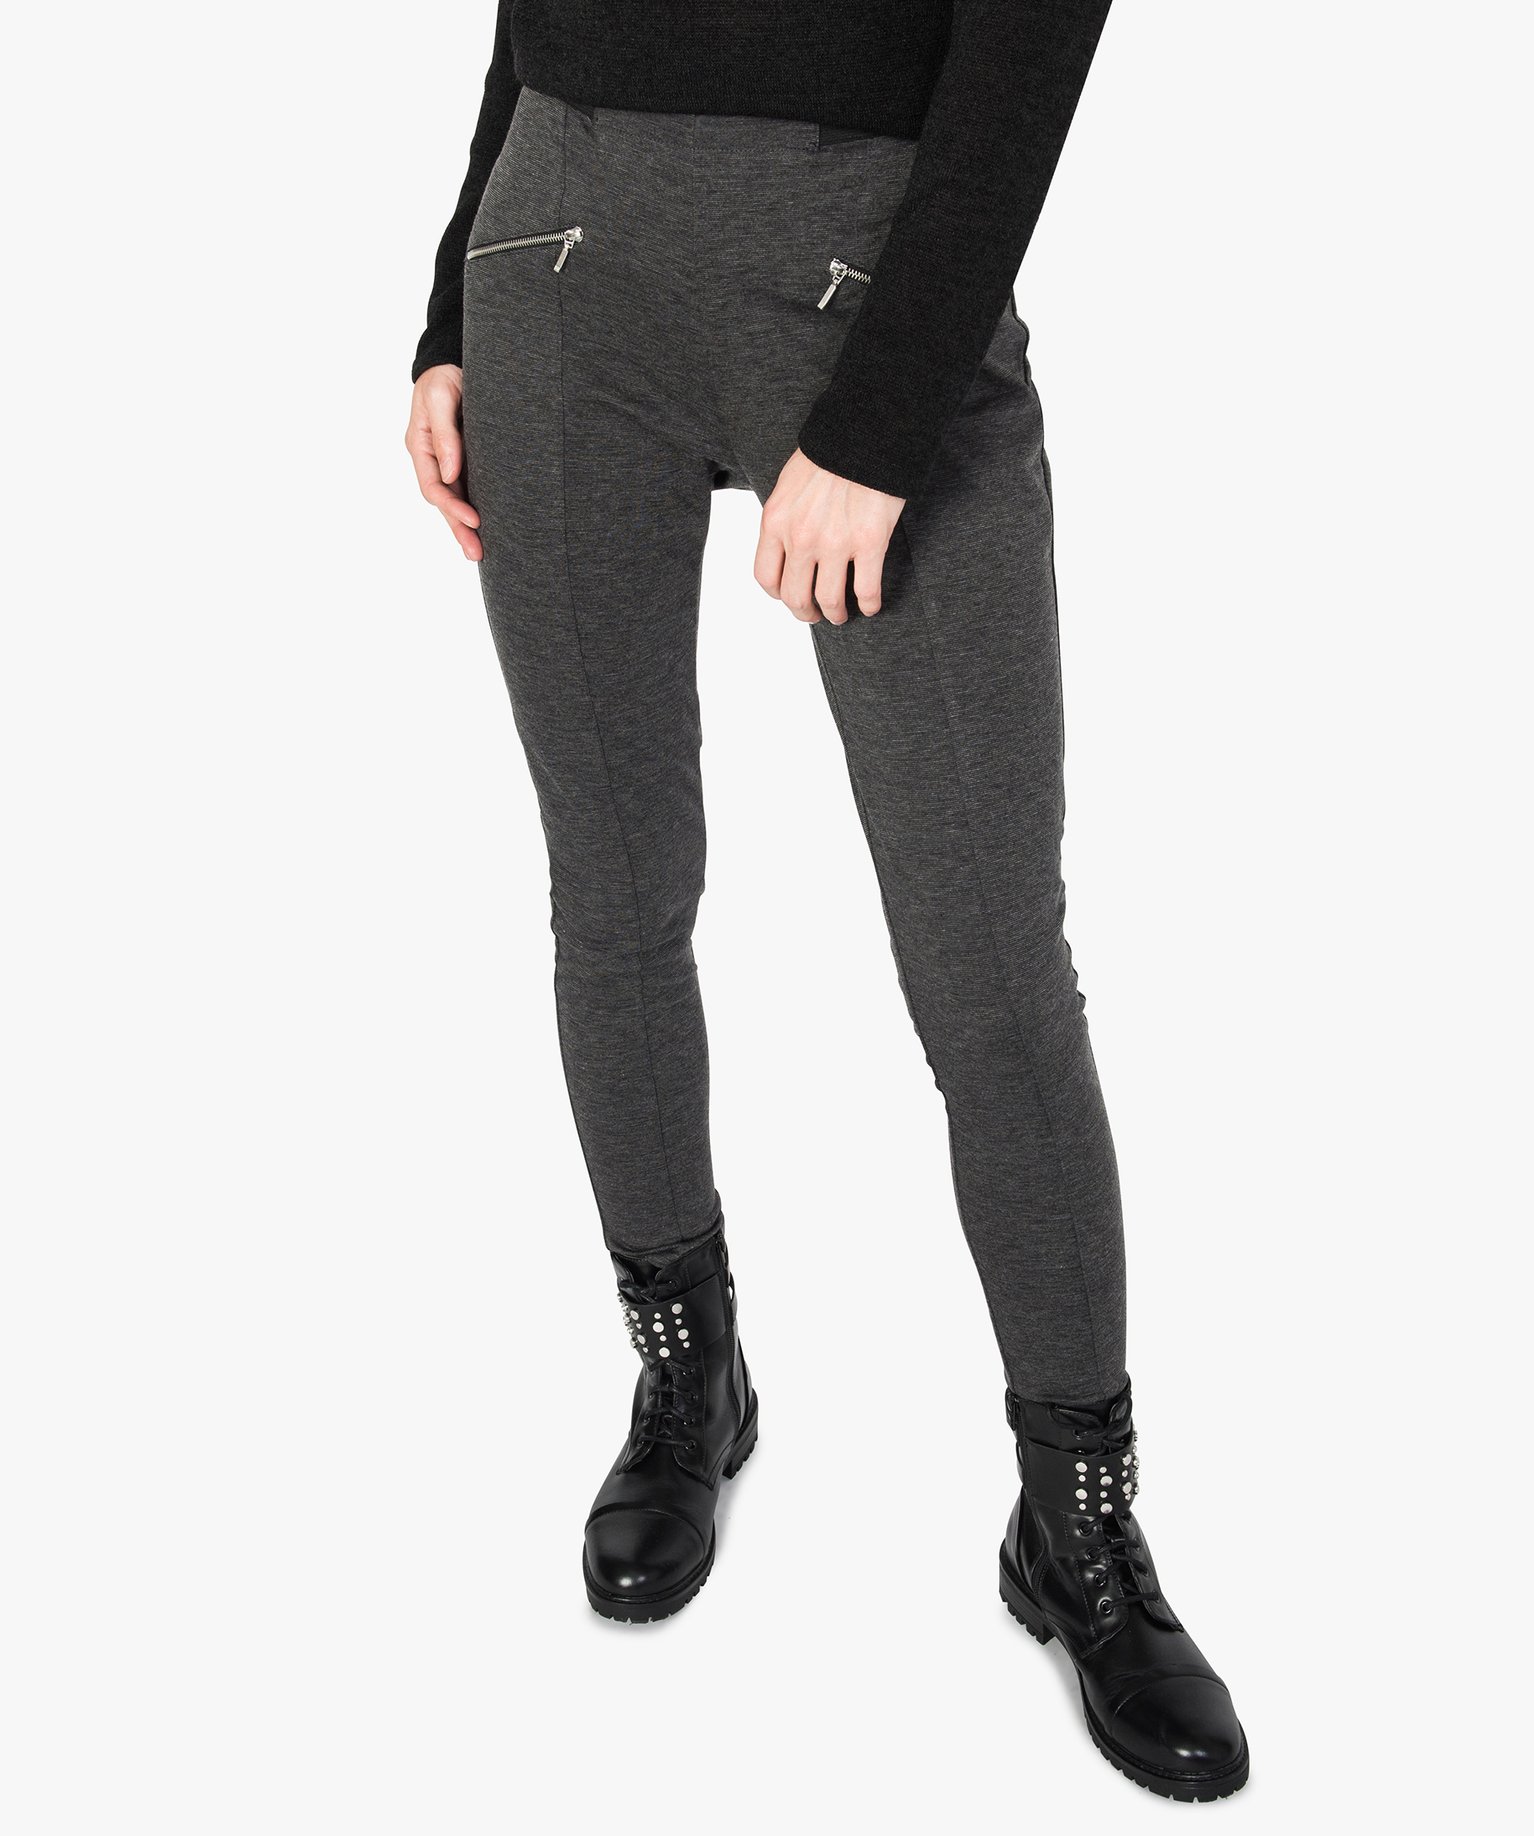 pantalon femme moulant chine a zips et taille elastique gris